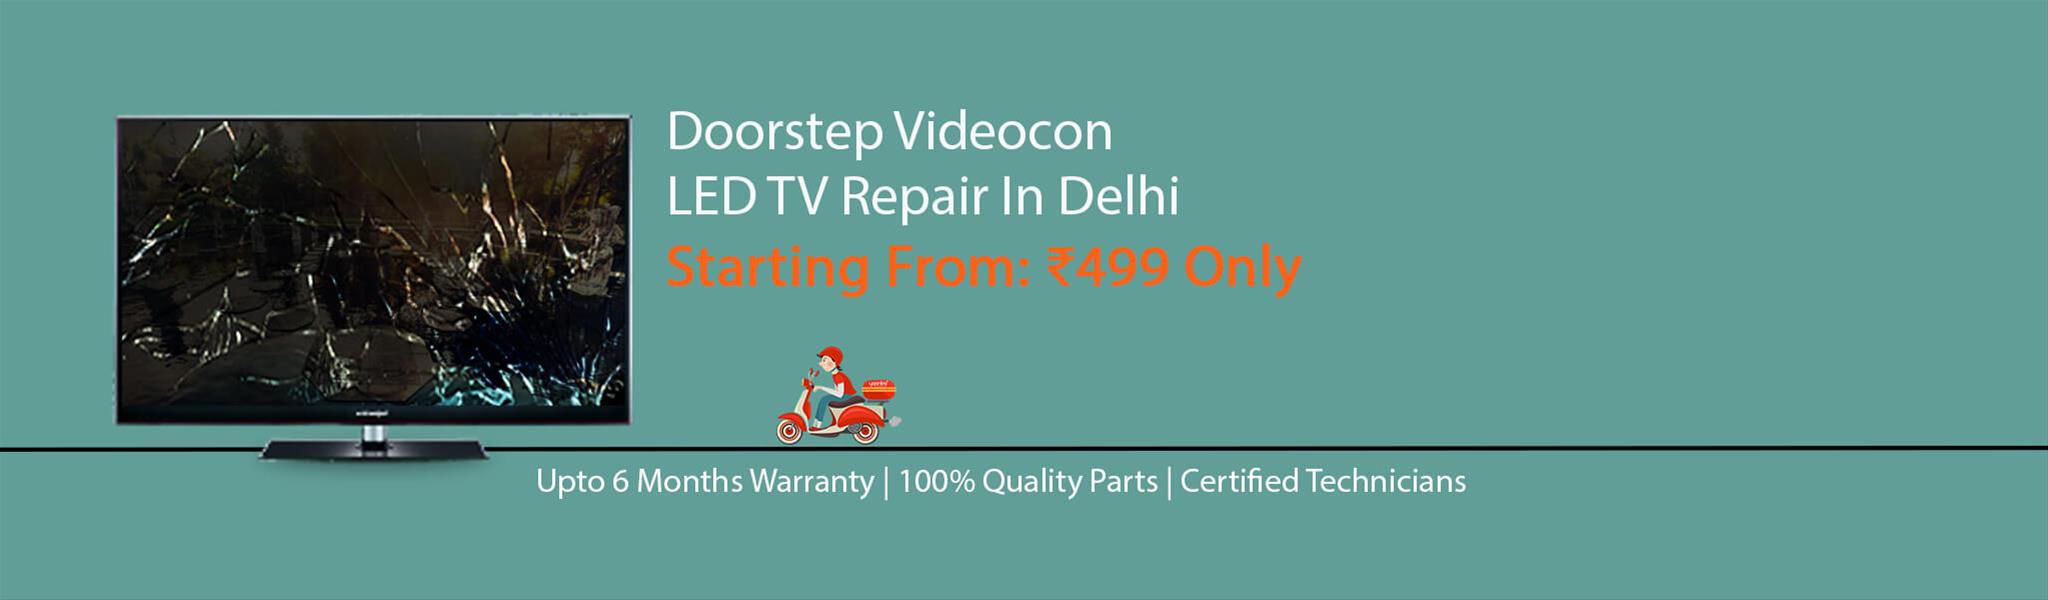 videocon-tv-repair-in-delhi.jpg